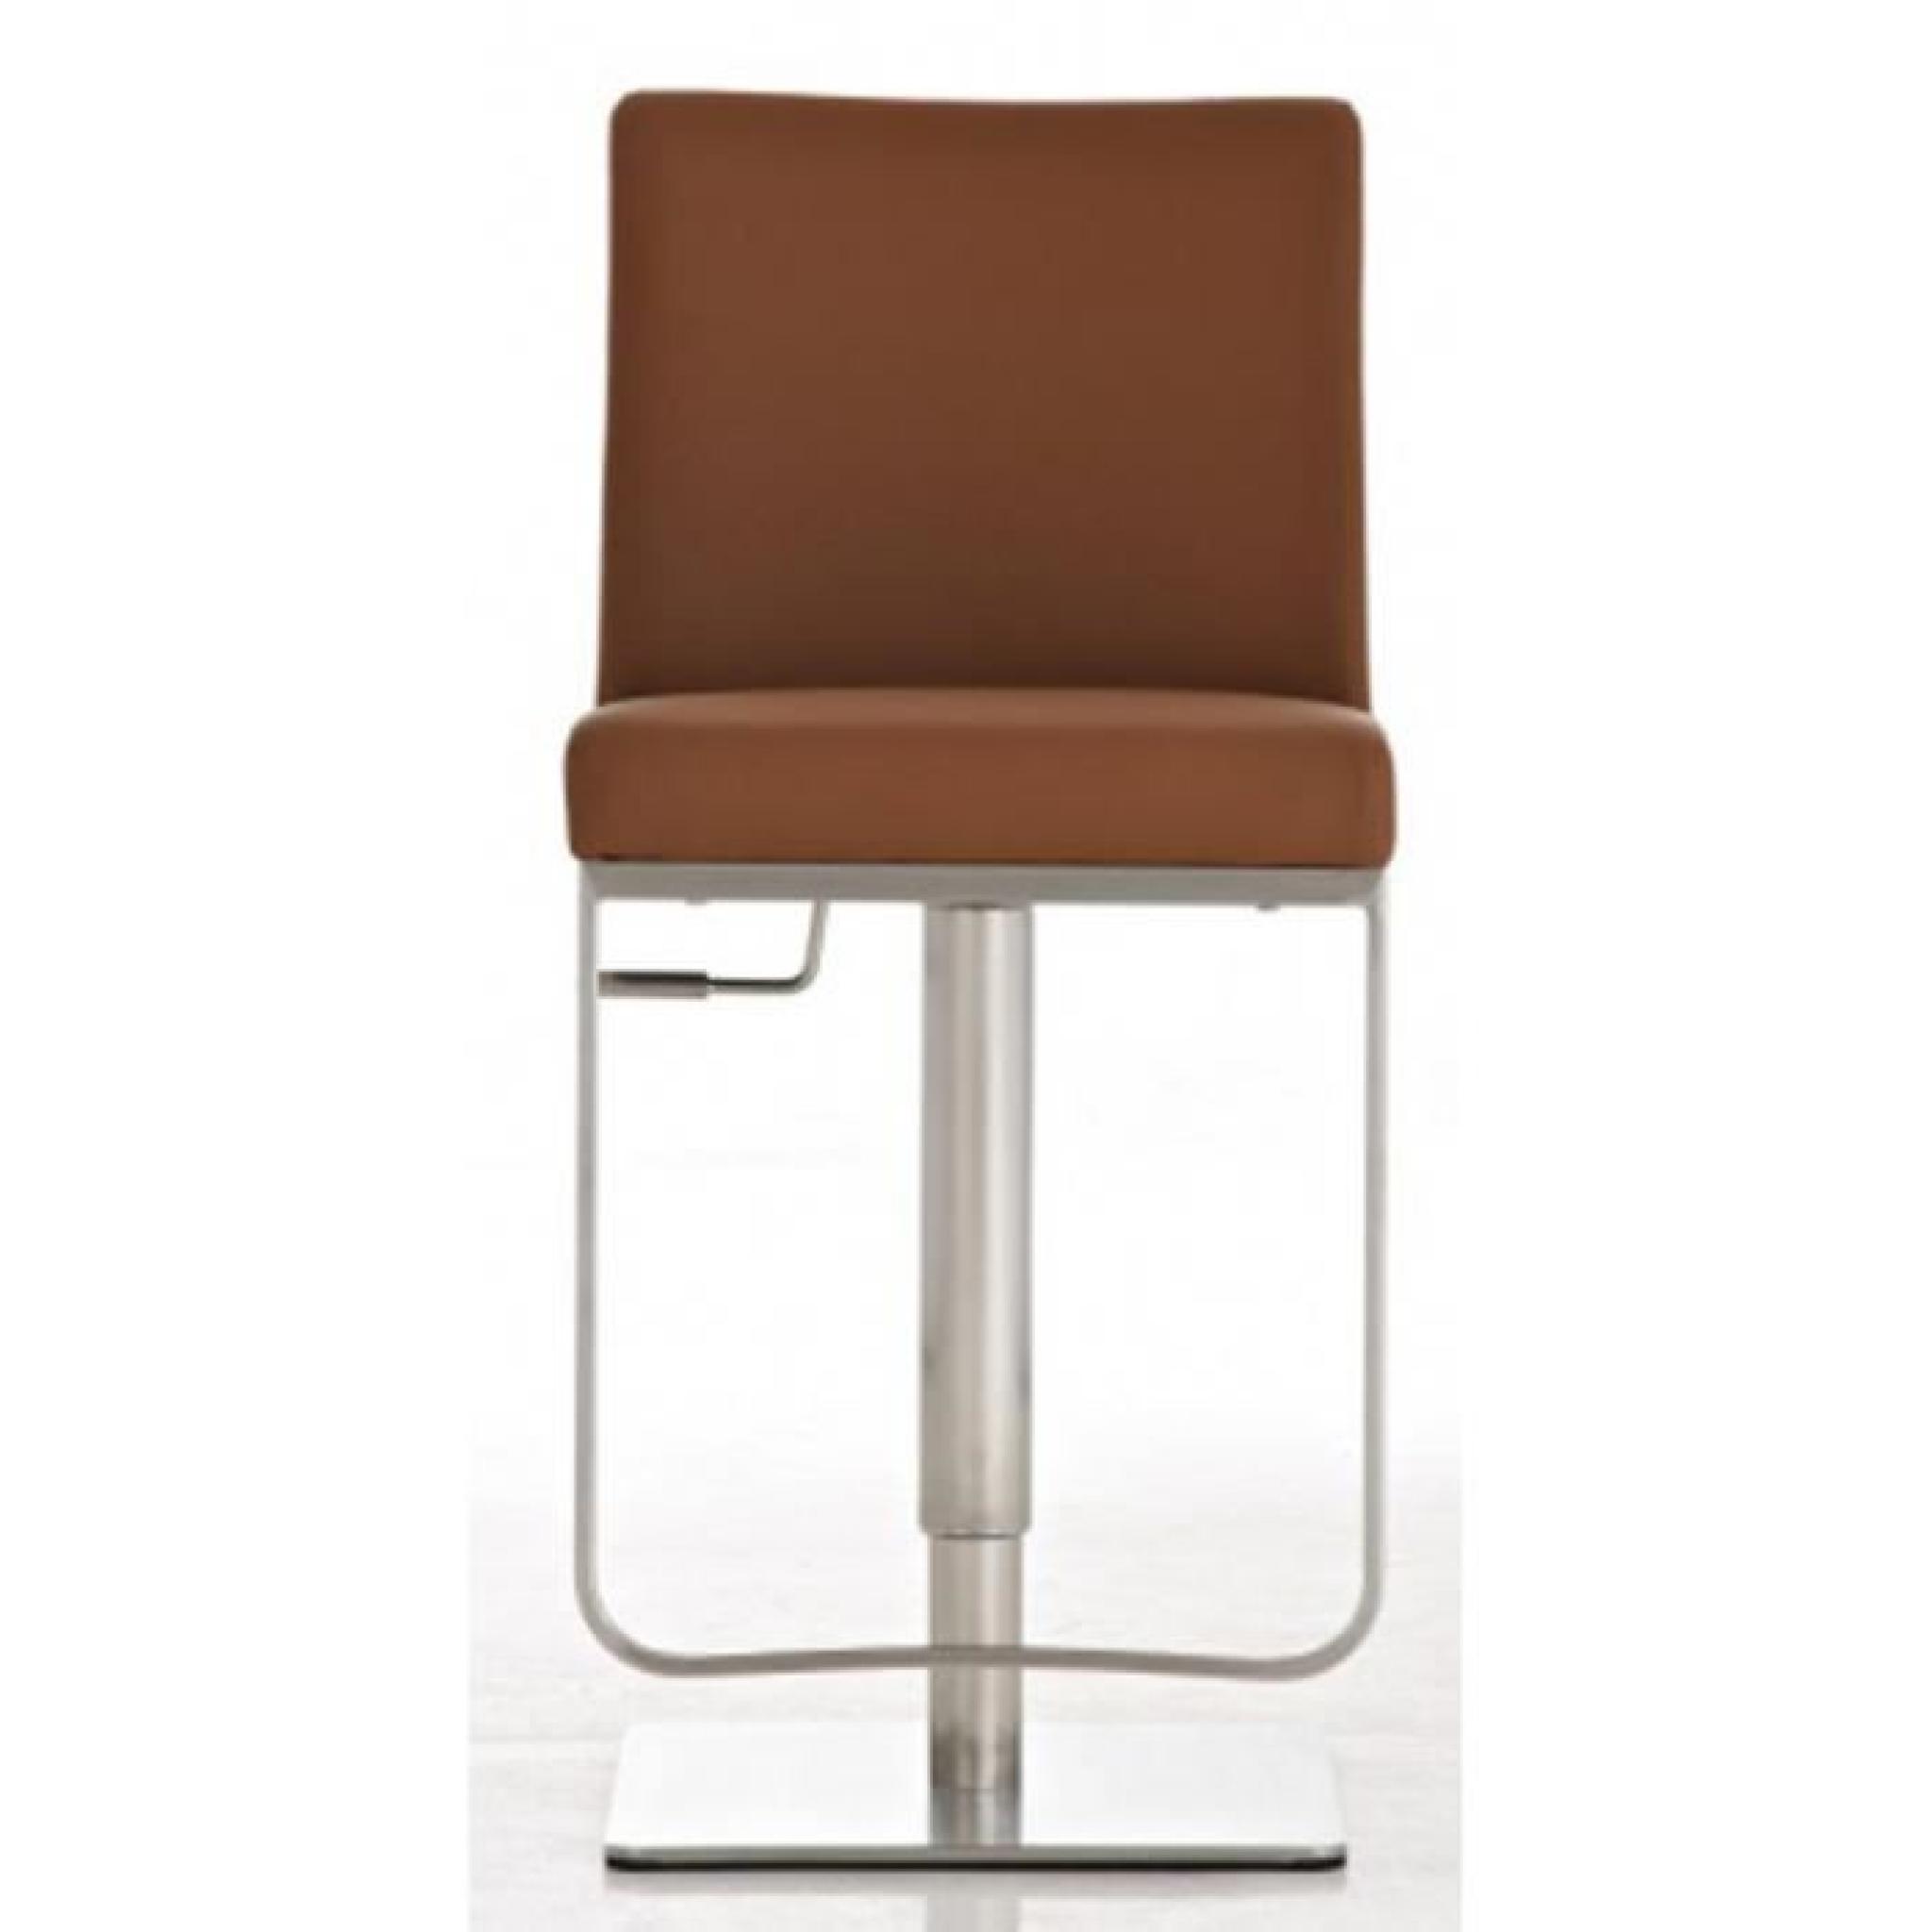 Chaise de bar coloris brun en acier inoxydable, H 92-116 x L 44 x P 55 cm pas cher